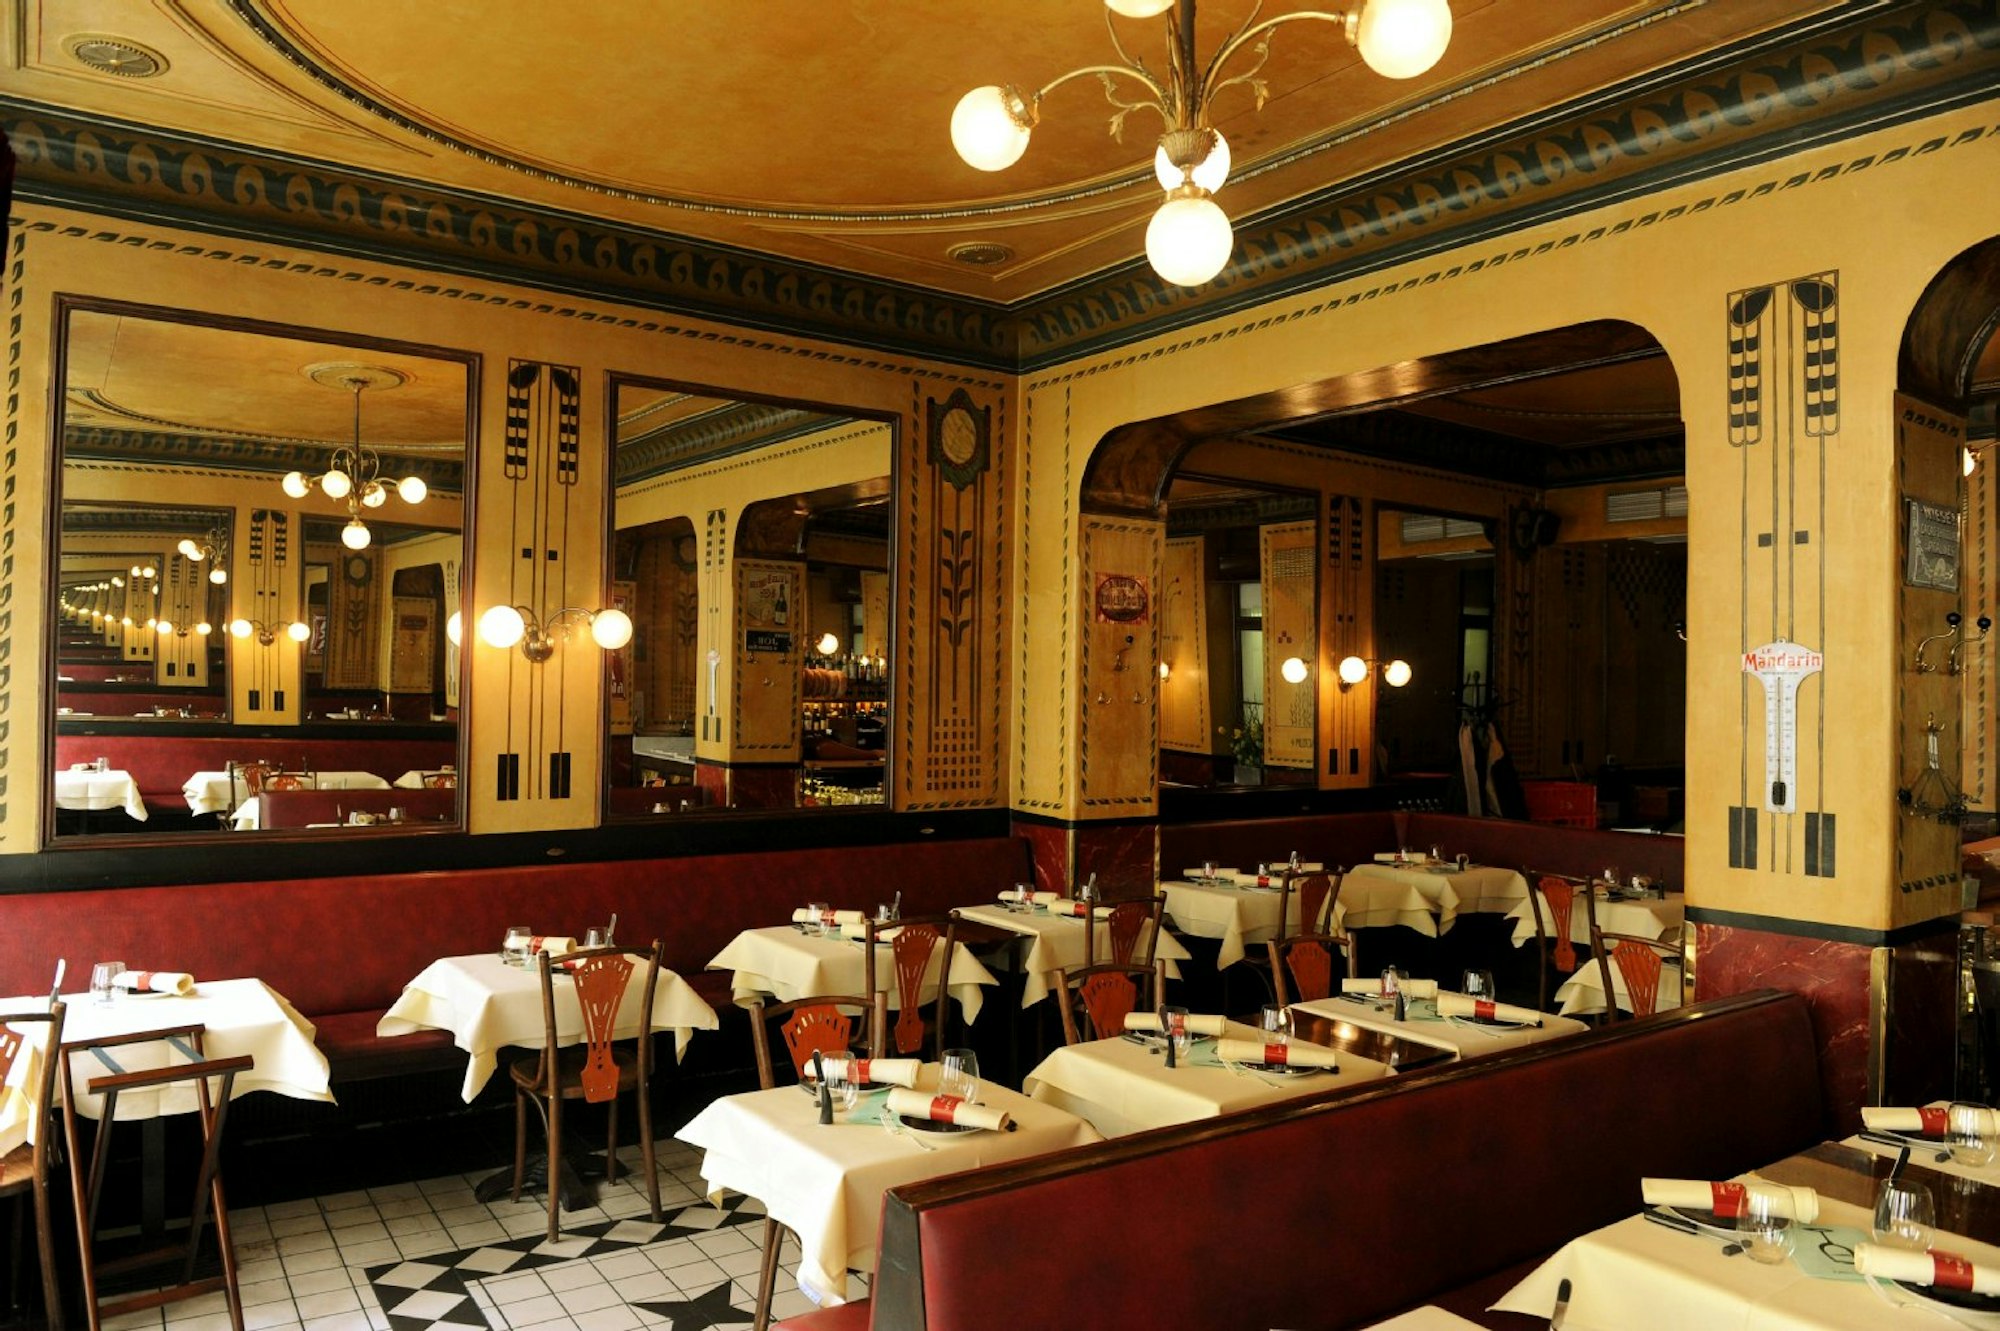 Das Restaurant Le Moissonier hat zwei Sterne vom Guide Michelin erhalten.